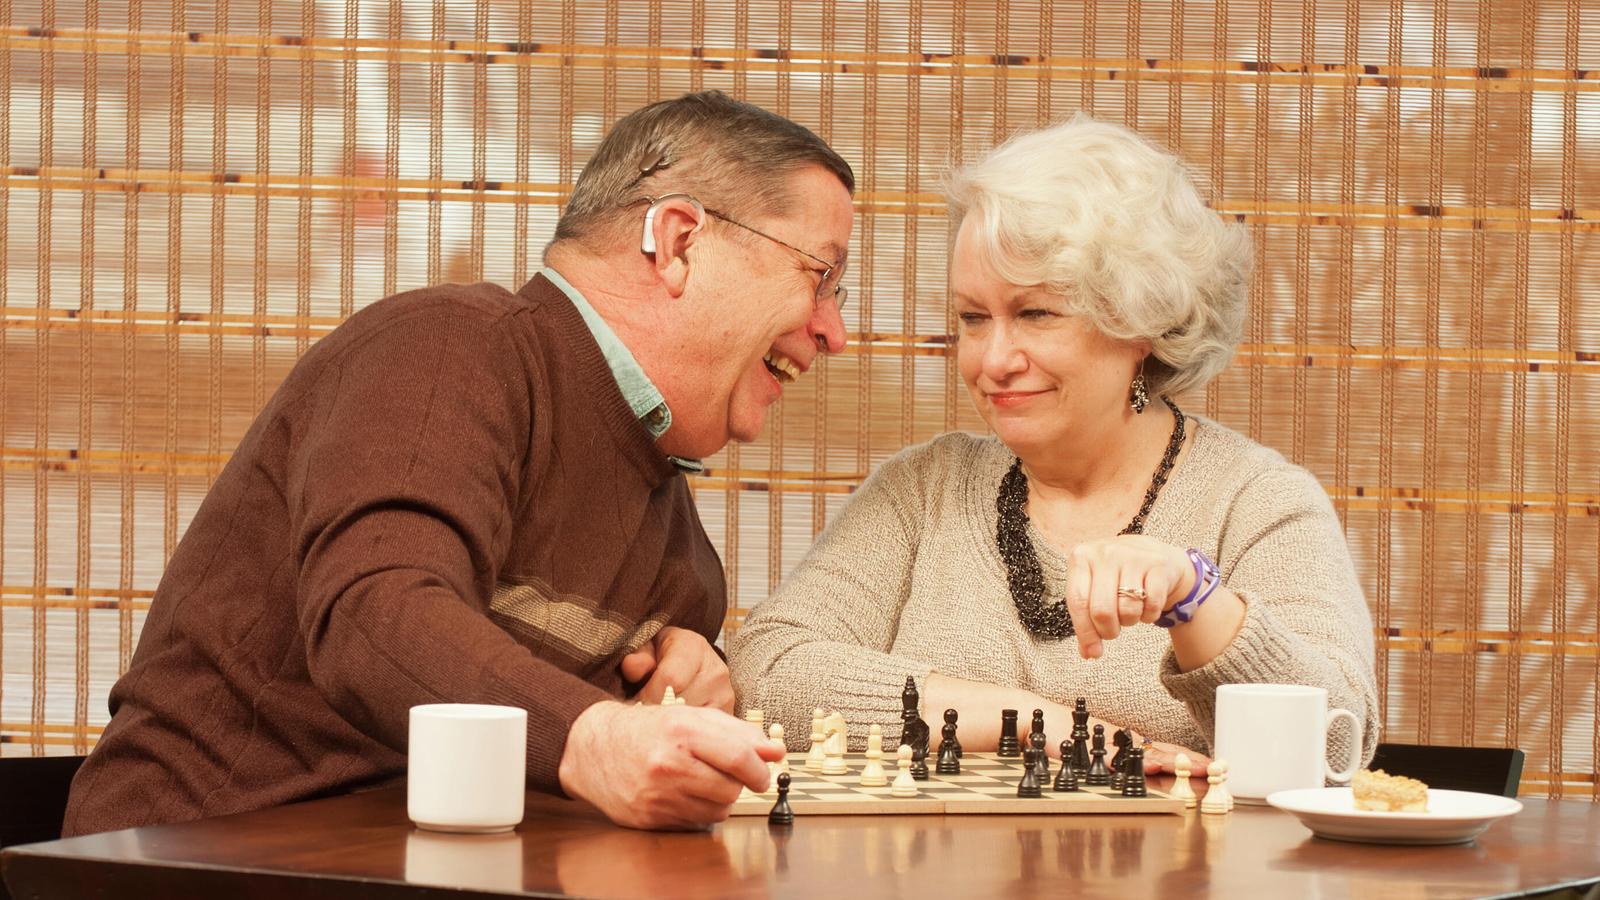 Bill, paciente con un implante, y su esposa Pam se divierten jugando al ajedrez